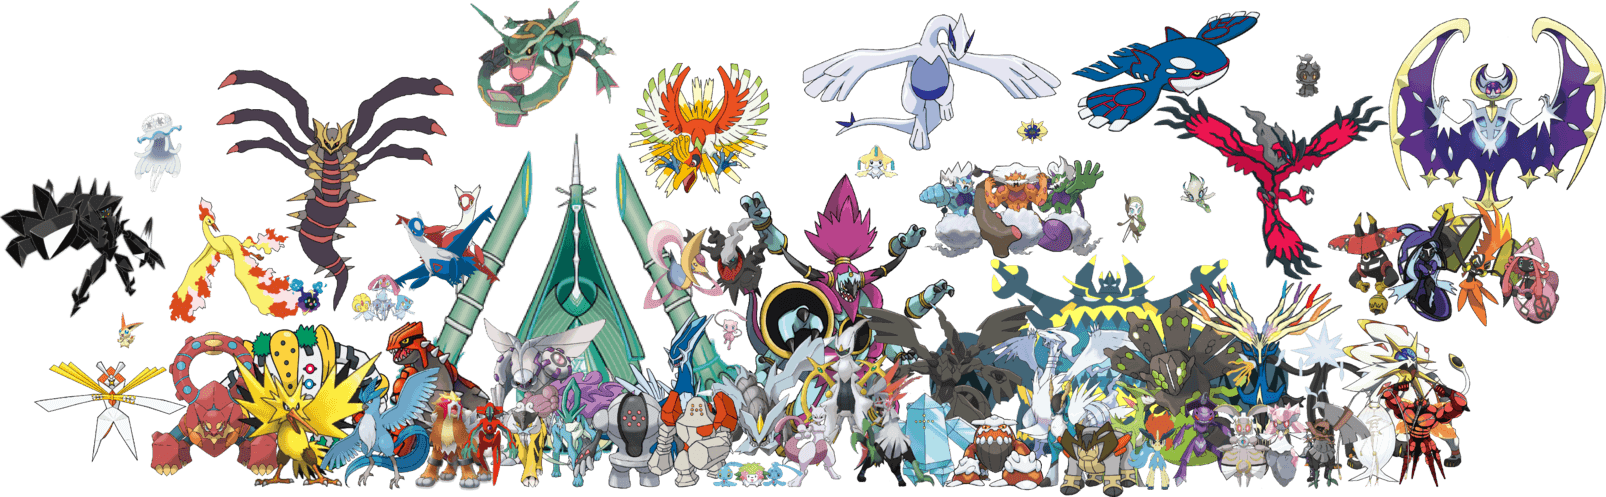 Every Legendary Pokemon Wallpapers - Top Những Hình Ảnh Đẹp